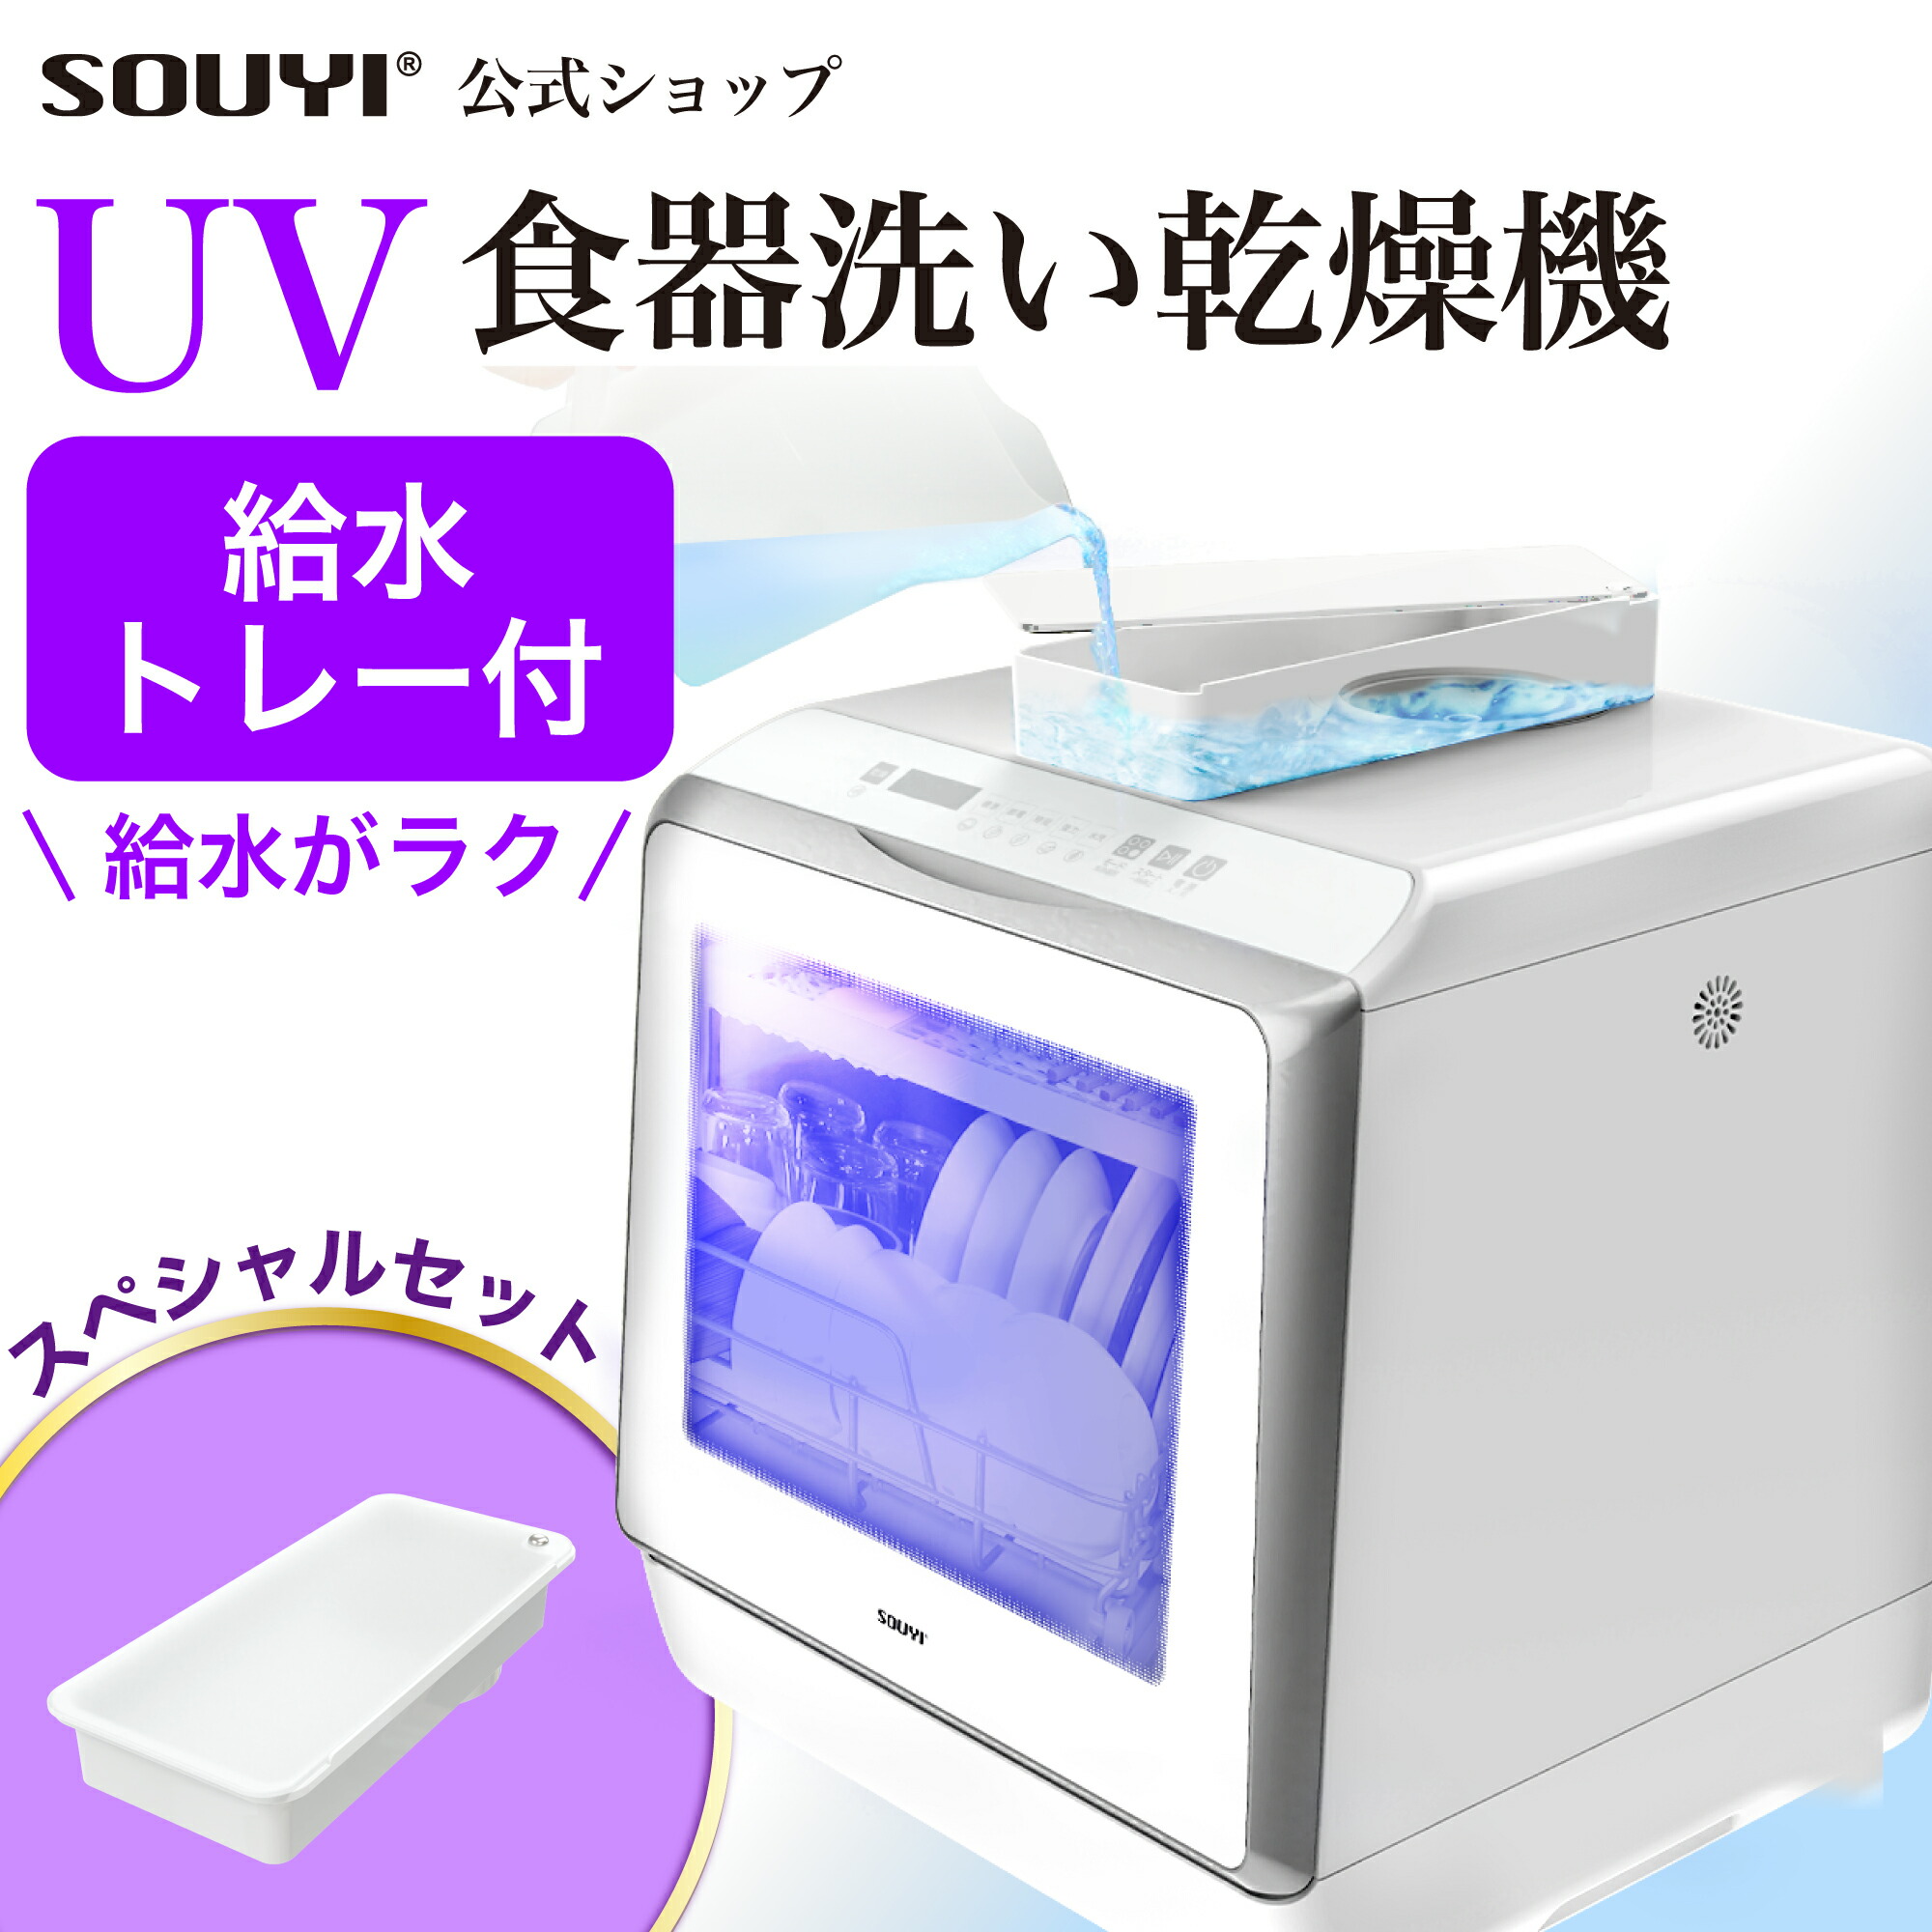 食洗機 食洗器 UV食洗機 食器洗い乾燥機 SY-118-UV 工事不要 タンク式 据え置き型 3人用 3人暮らし 除菌 乾燥 UV 除菌 節水 節約 キッチン